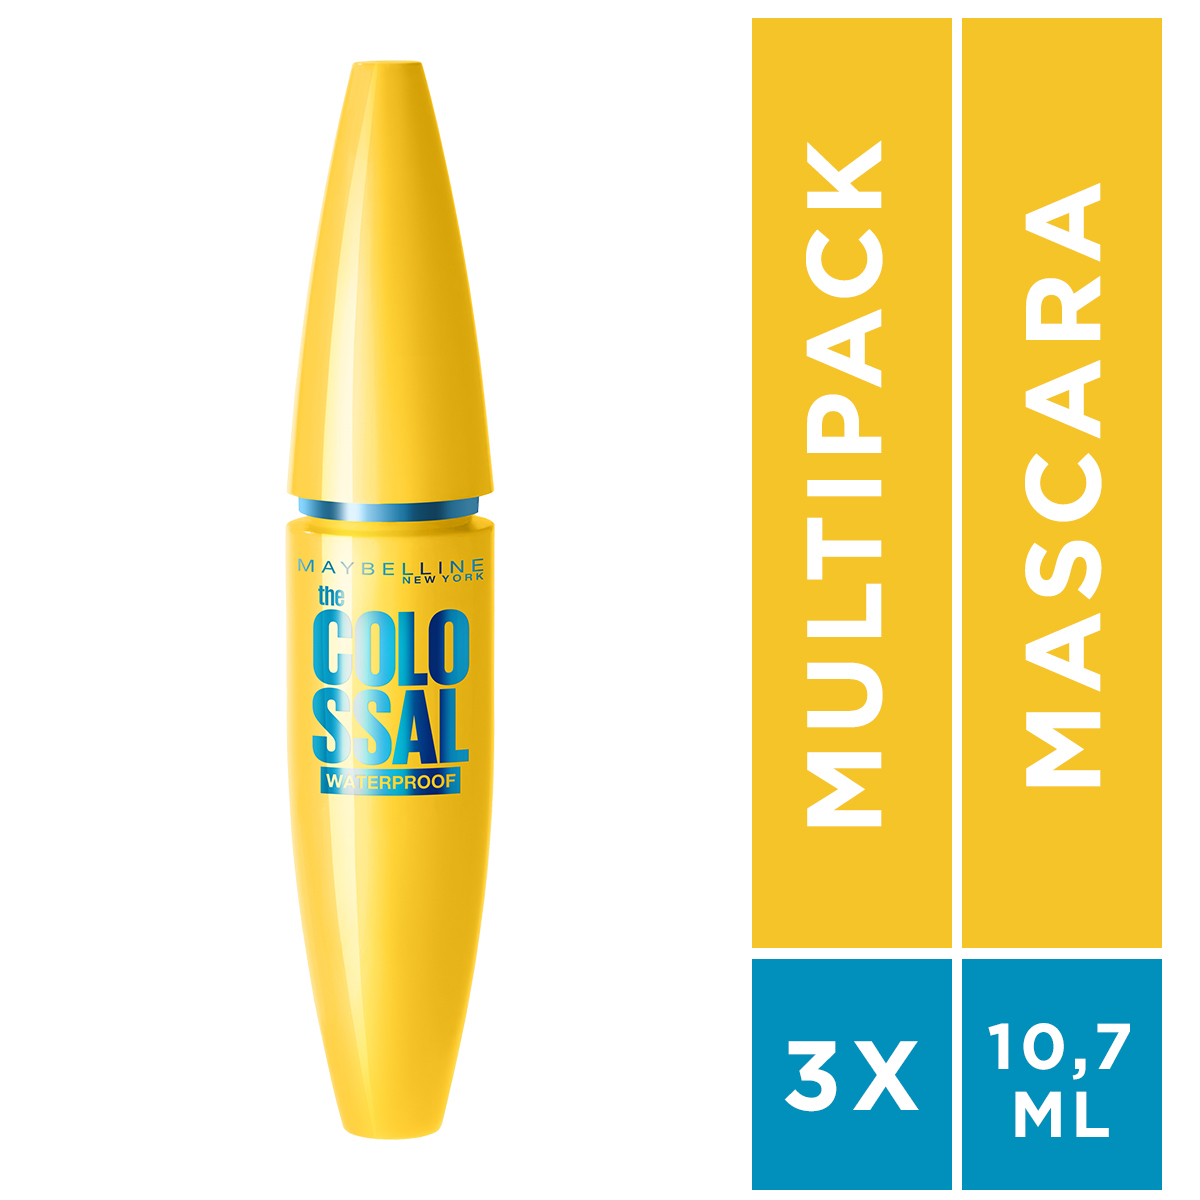 Maybelline Voordeelverpakking Volume Mascara Verrijkt met Collageen voor Direct Kolossaal Volume - 3x 10.7 ml